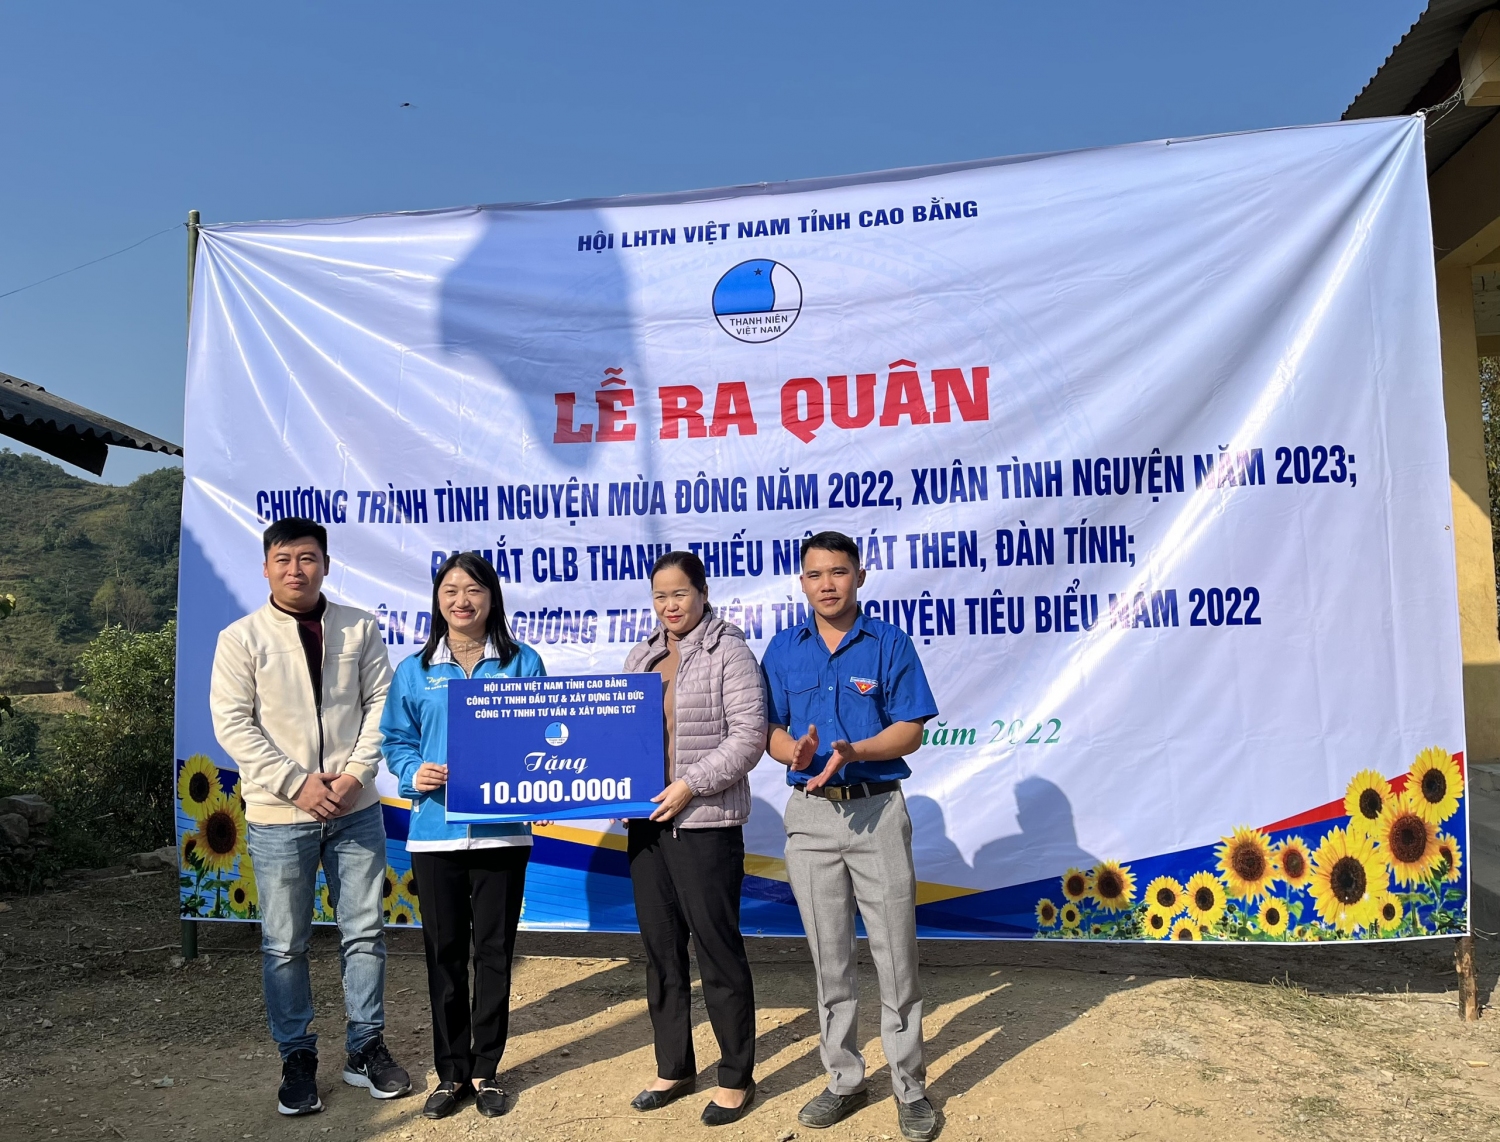 3 Hội LHTN Việt Nam tỉnh trao kinh phí 10 triệu đồng hỗ trợ nhân dân xóm Lũng Tiến làm đường bê tông nông thôn